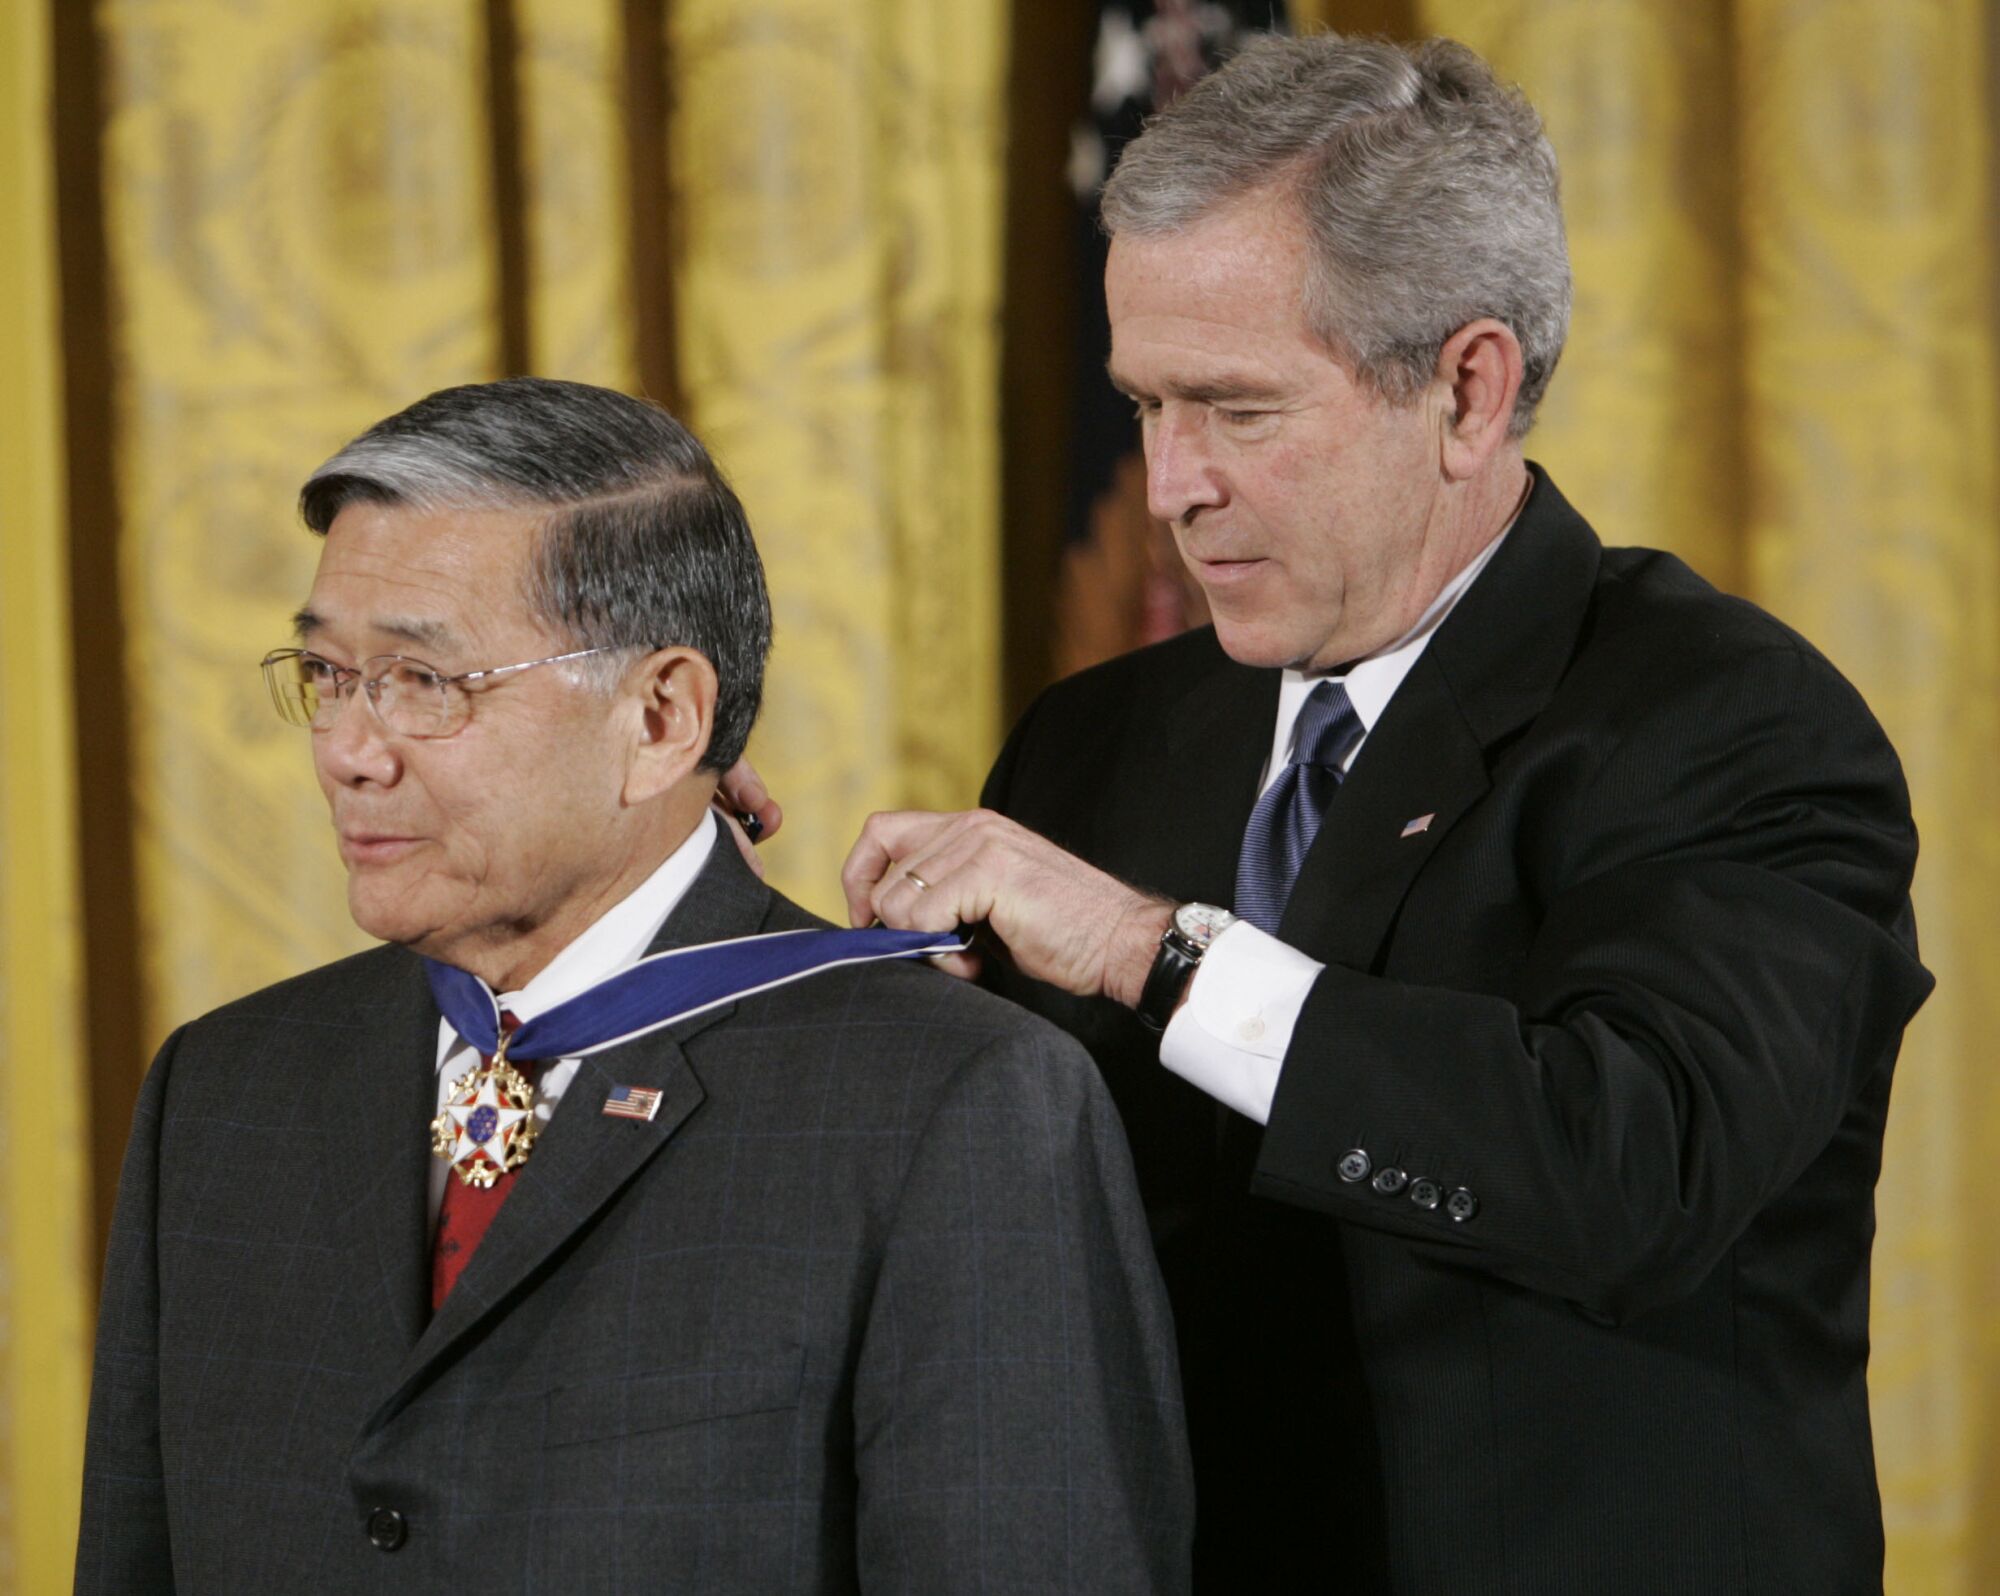 جورج دبلیو بوش، رئیس جمهور وقت، مدال آزادی ریاست جمهوری را به نورمن مینتا اعطا می کند.